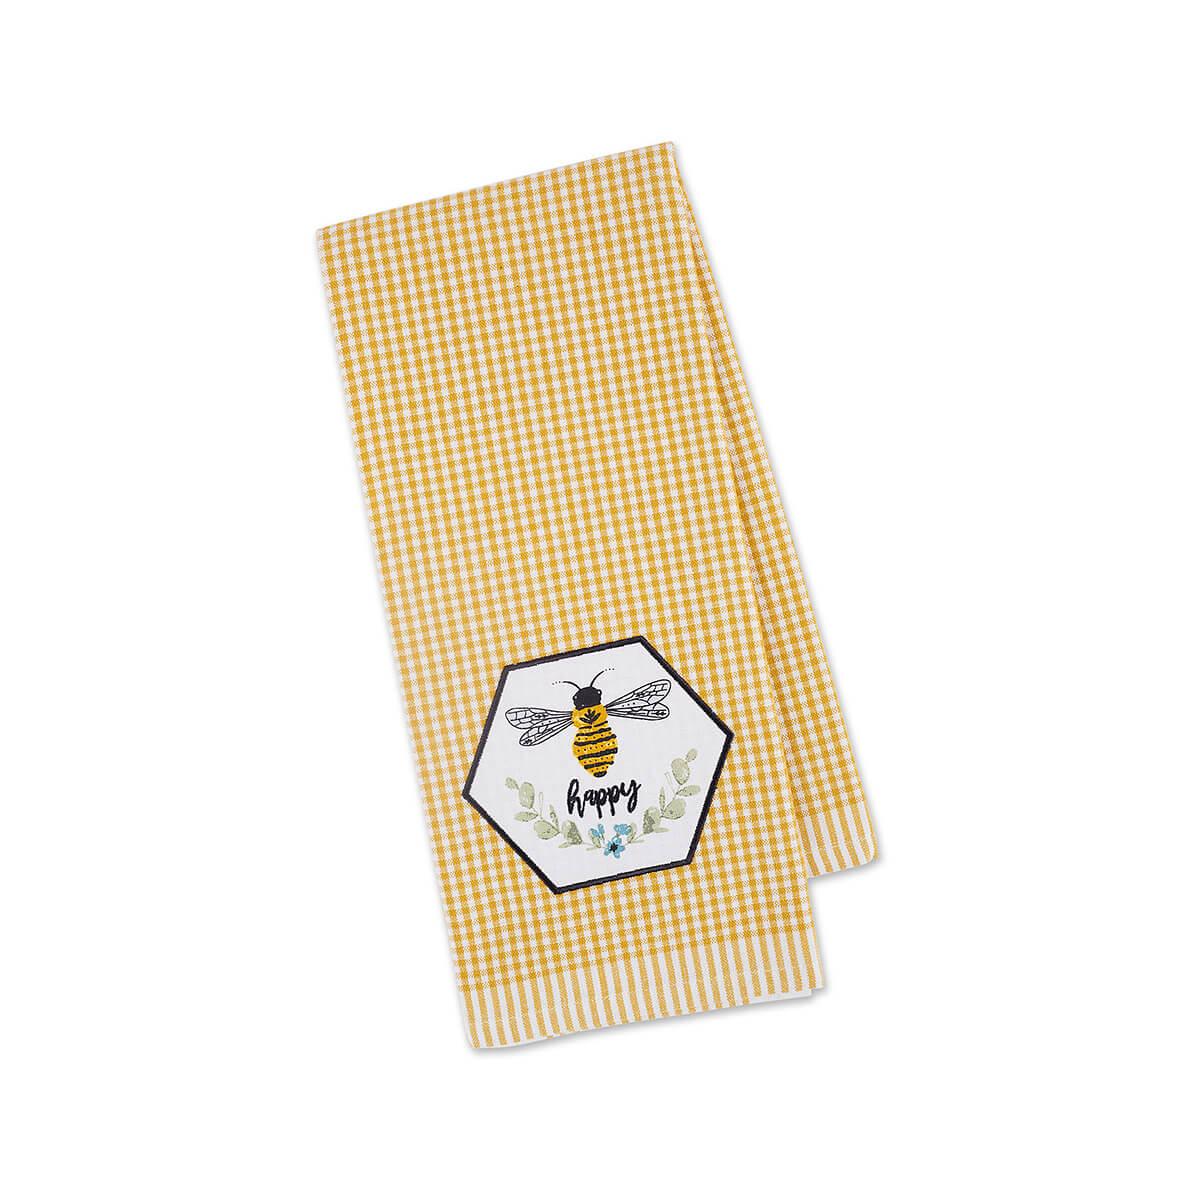 Bee Kind Embellished Tea Towel - Yellow Gingham